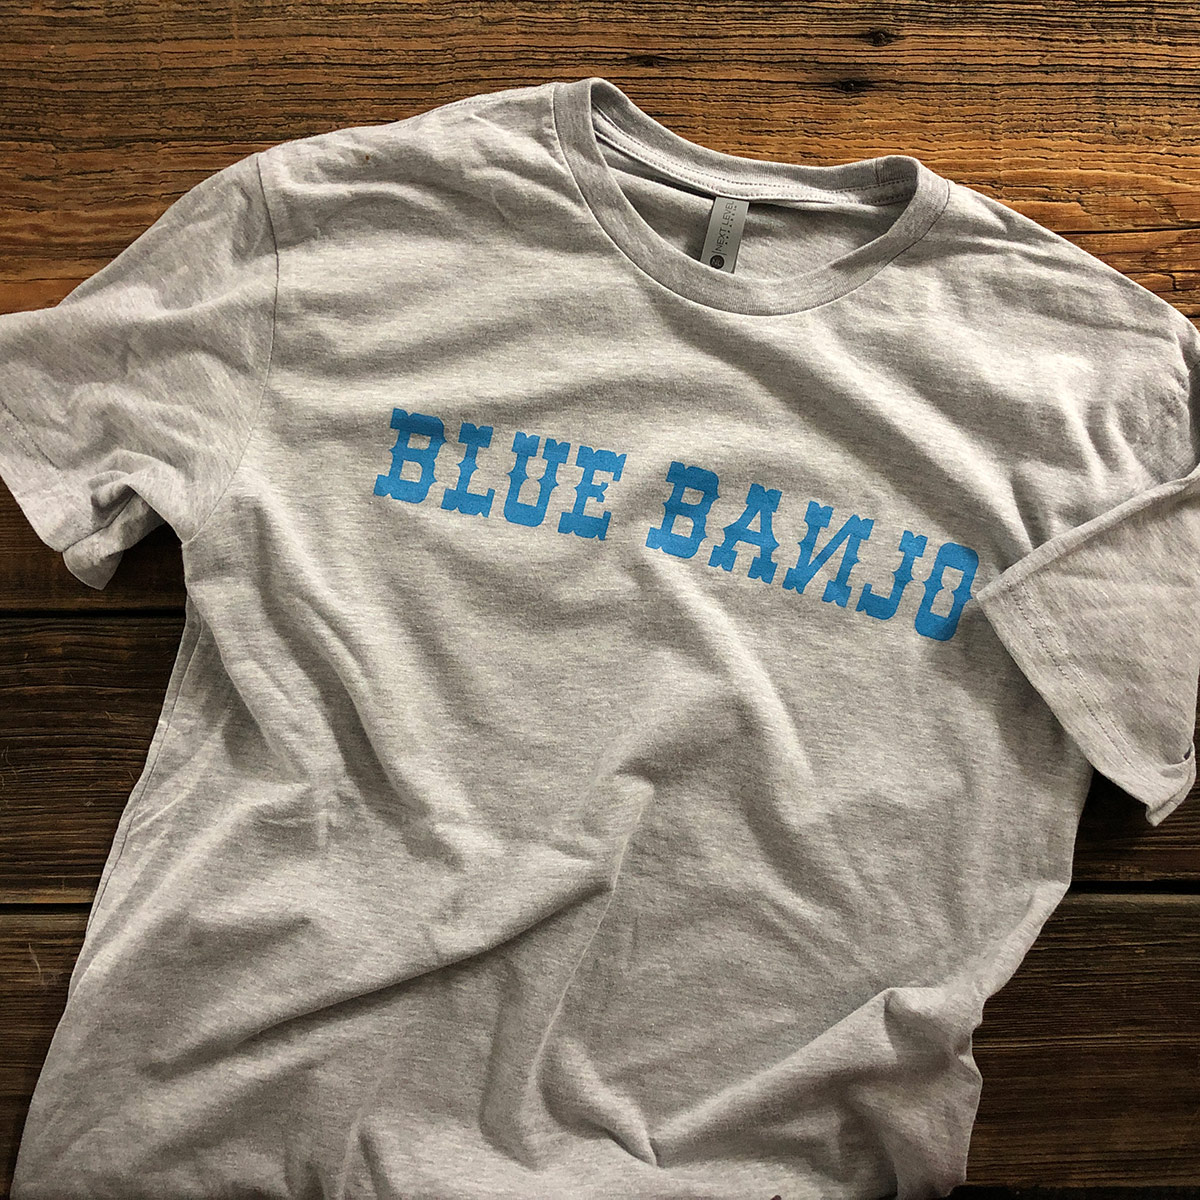 Blue Banjo Tshirt